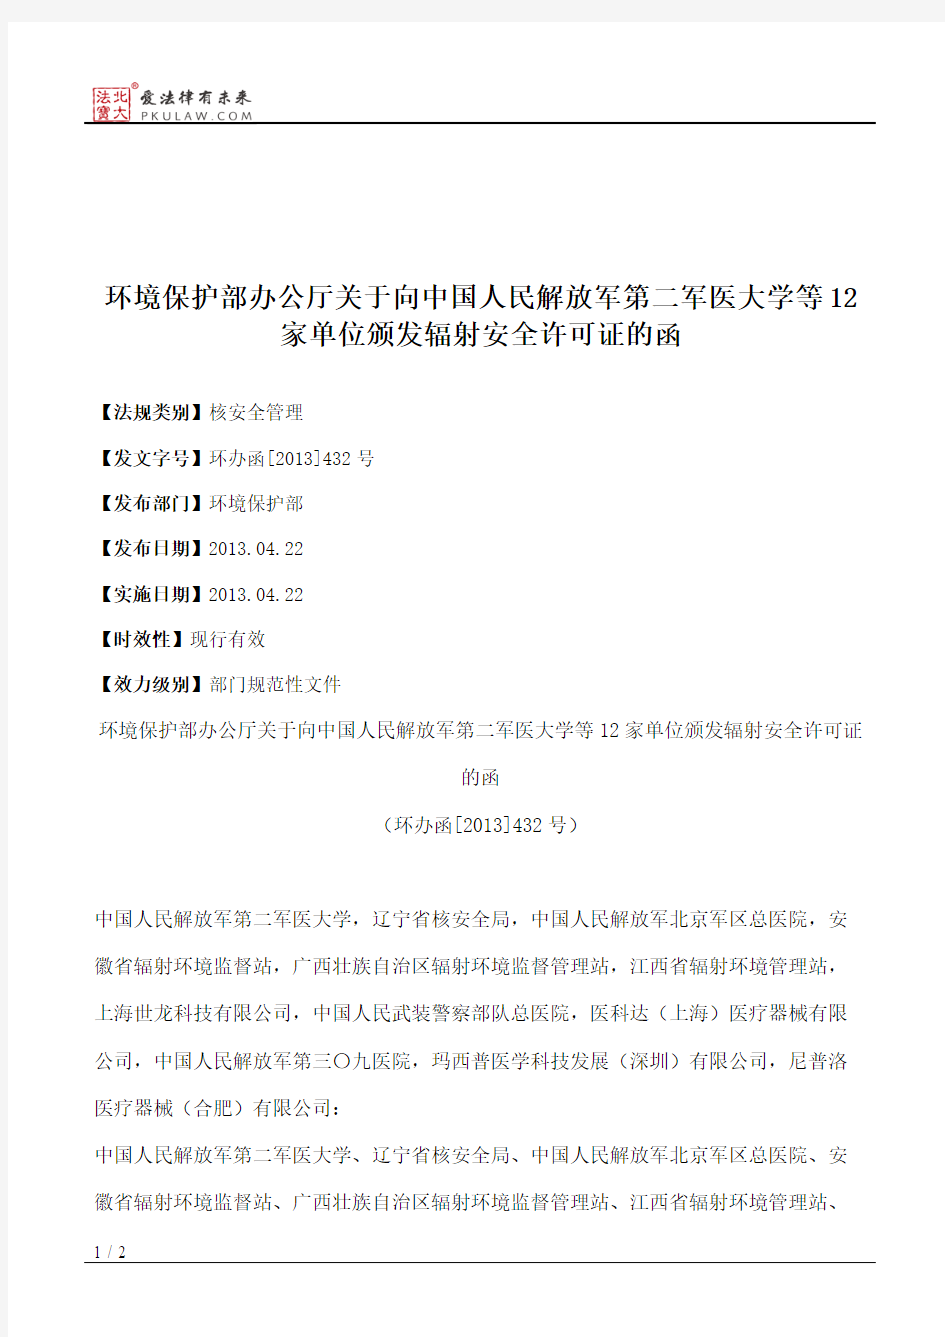 环境保护部办公厅关于向中国人民解放军第二军医大学等12家单位颁